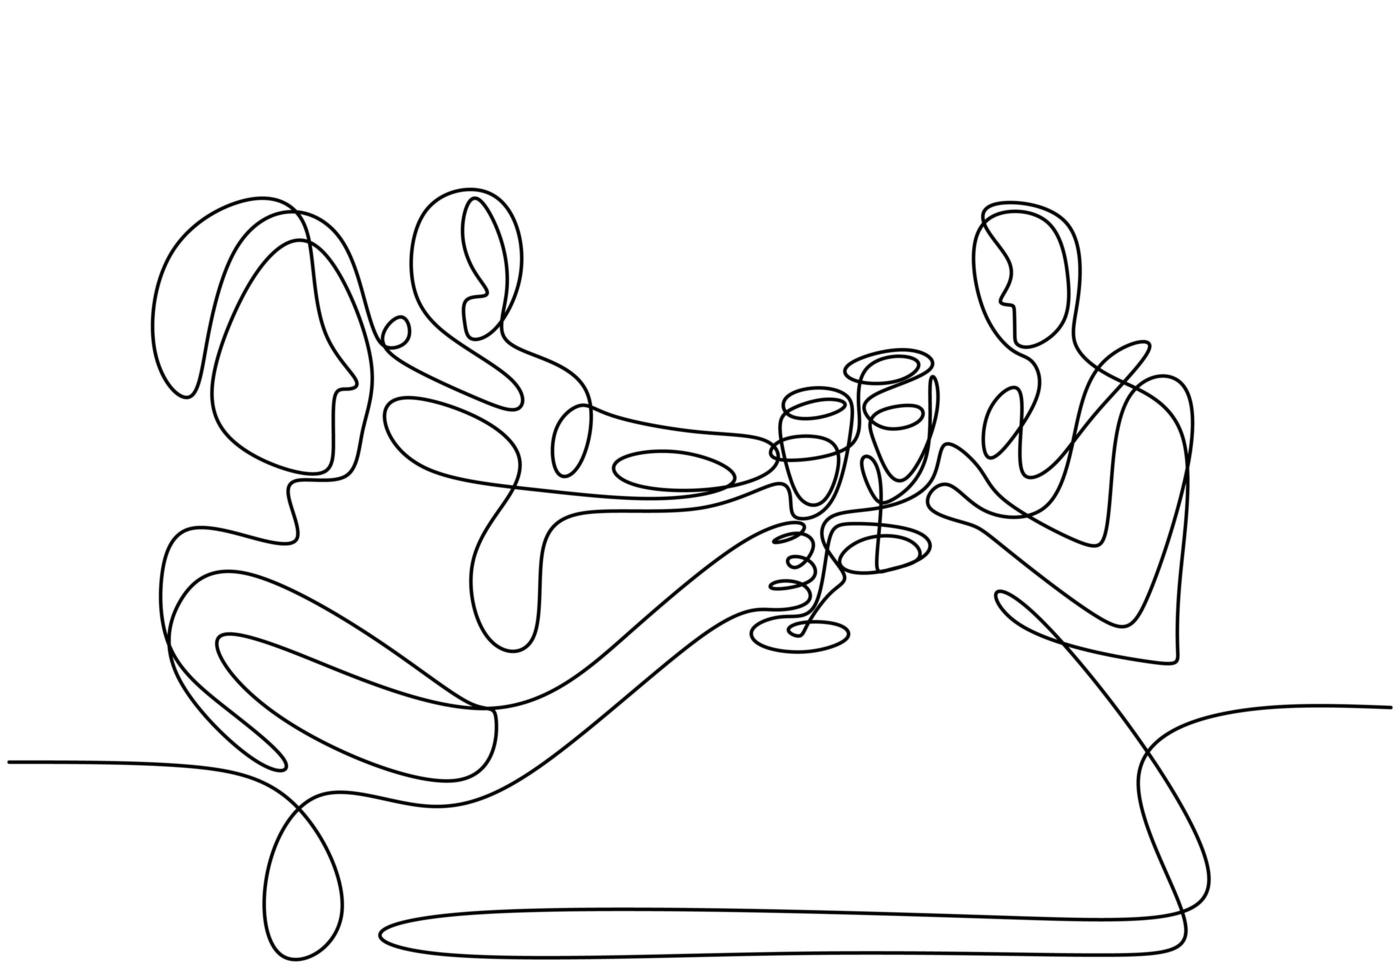 dessin au trait continu, vecteur de personnes du groupe applaudissant avec des verres de vin ou de champagne. homme et femme en fête. conception de minimalisme avec simplicité isolée sur fond blanc.